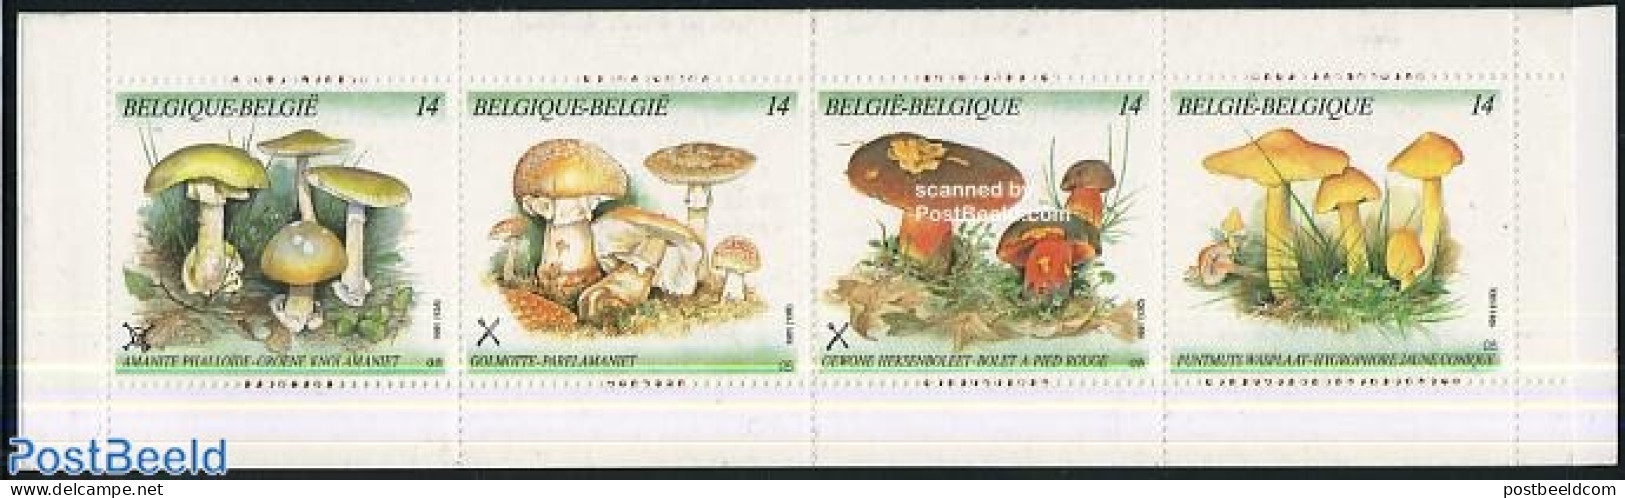 Belgium 1991 Mushrooms 4v In Booklet, Mint NH, Nature - Mushrooms - Stamp Booklets - Ongebruikt